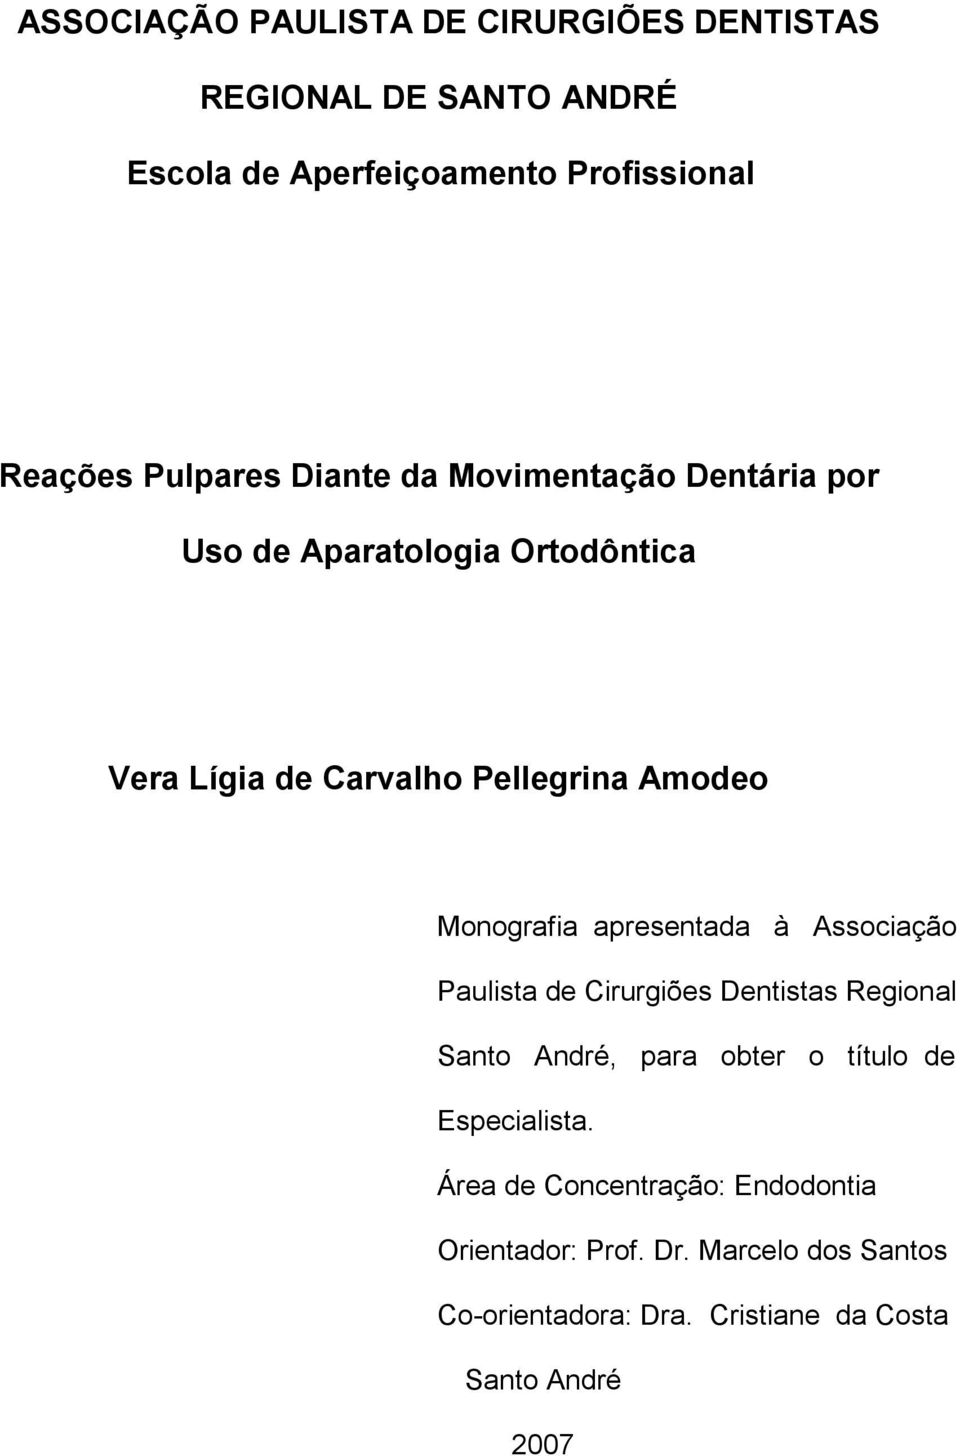 Monografia apresentada à Associação Paulista de Cirurgiões Dentistas Regional Santo André, para obter o título de